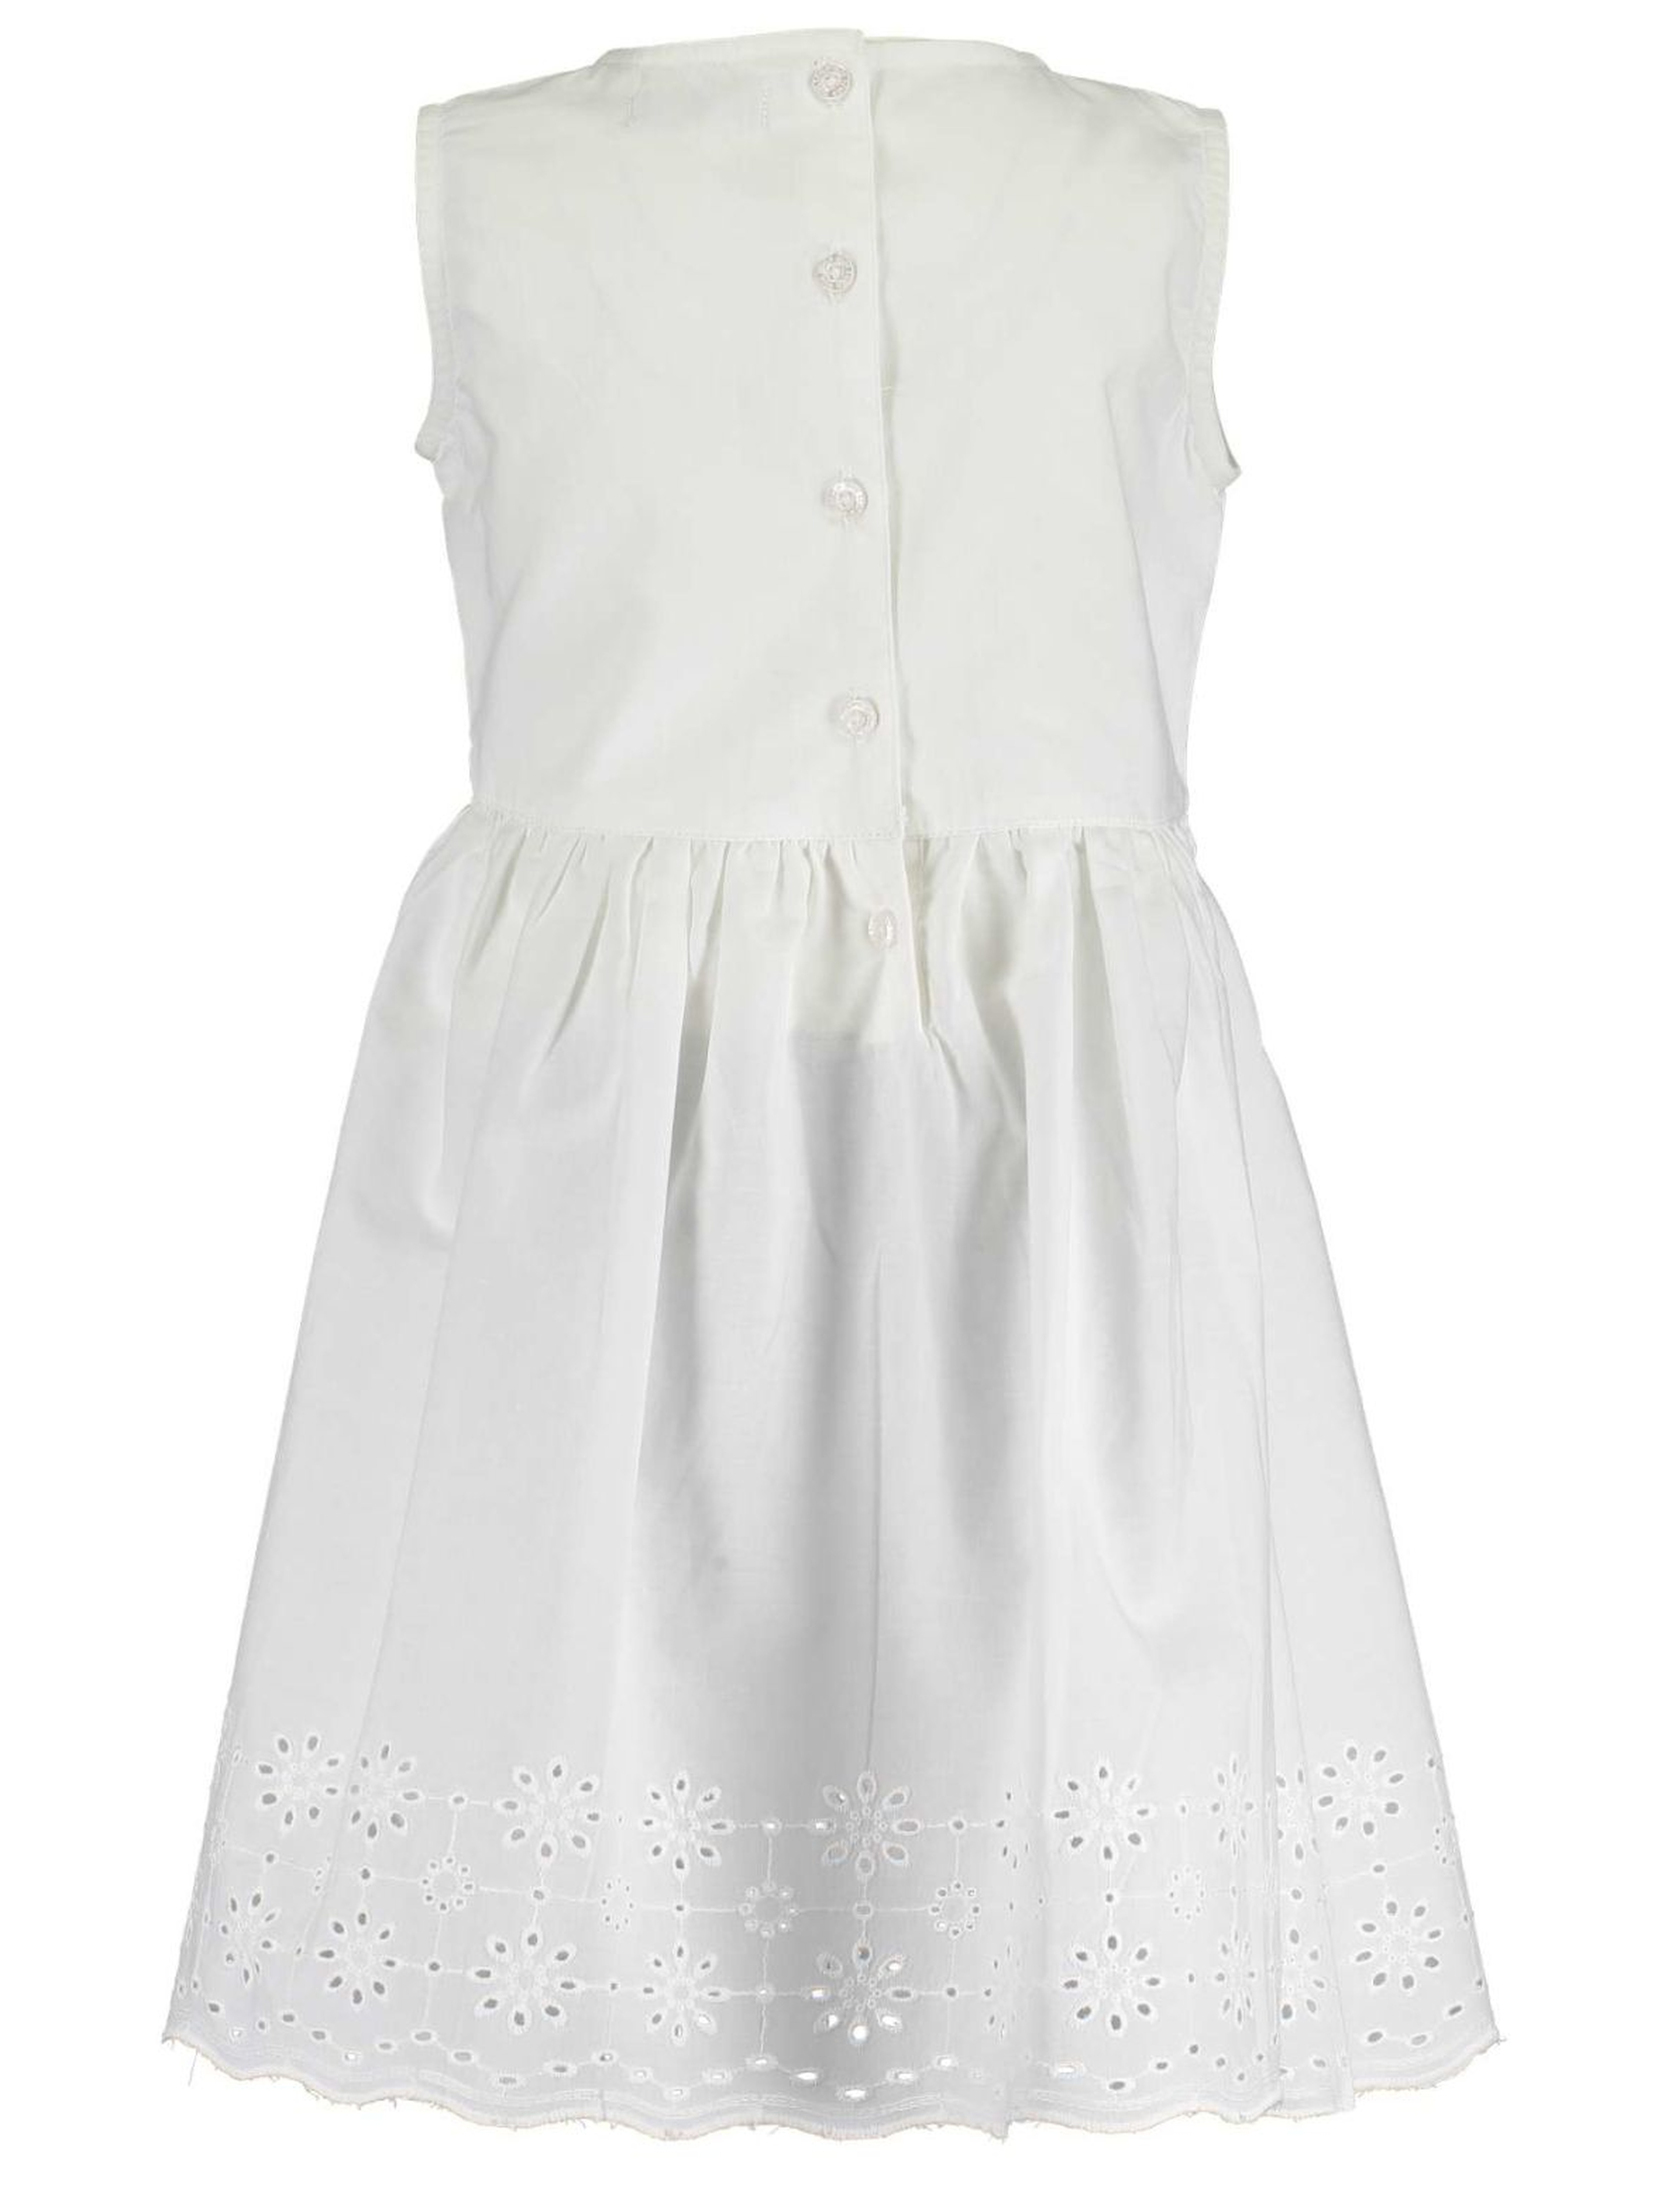 Sukienka dziewczęca na lato - biała z haftowanym dołem